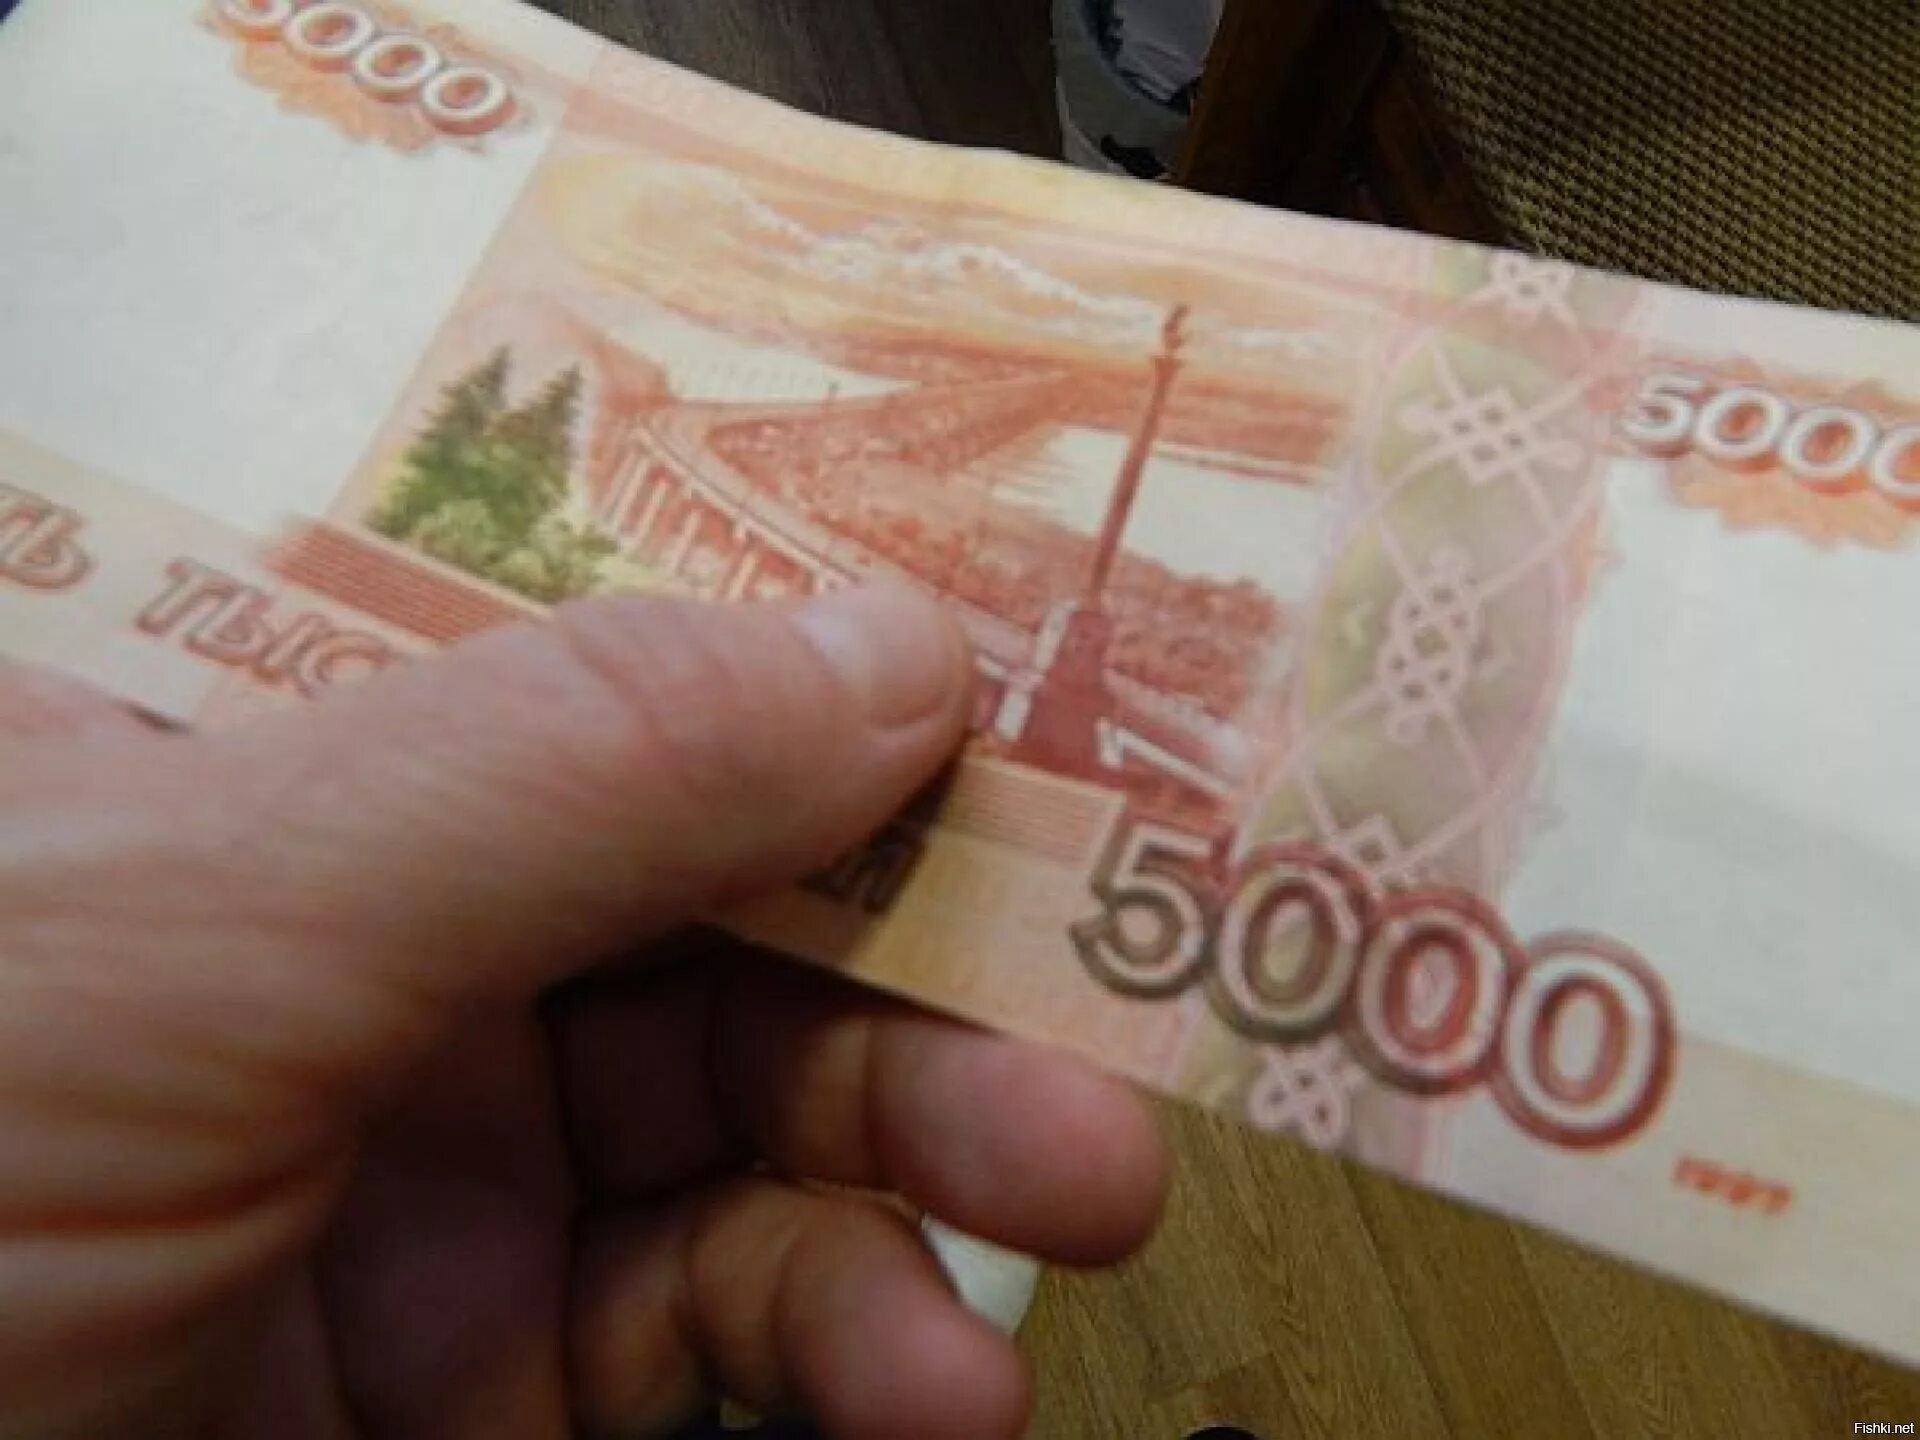 5 рублей в руке. 5 Тысяч рублей. 5 Тысяч в руке. Пять тысяч рублей в руке. 5000 Купюры в руках.